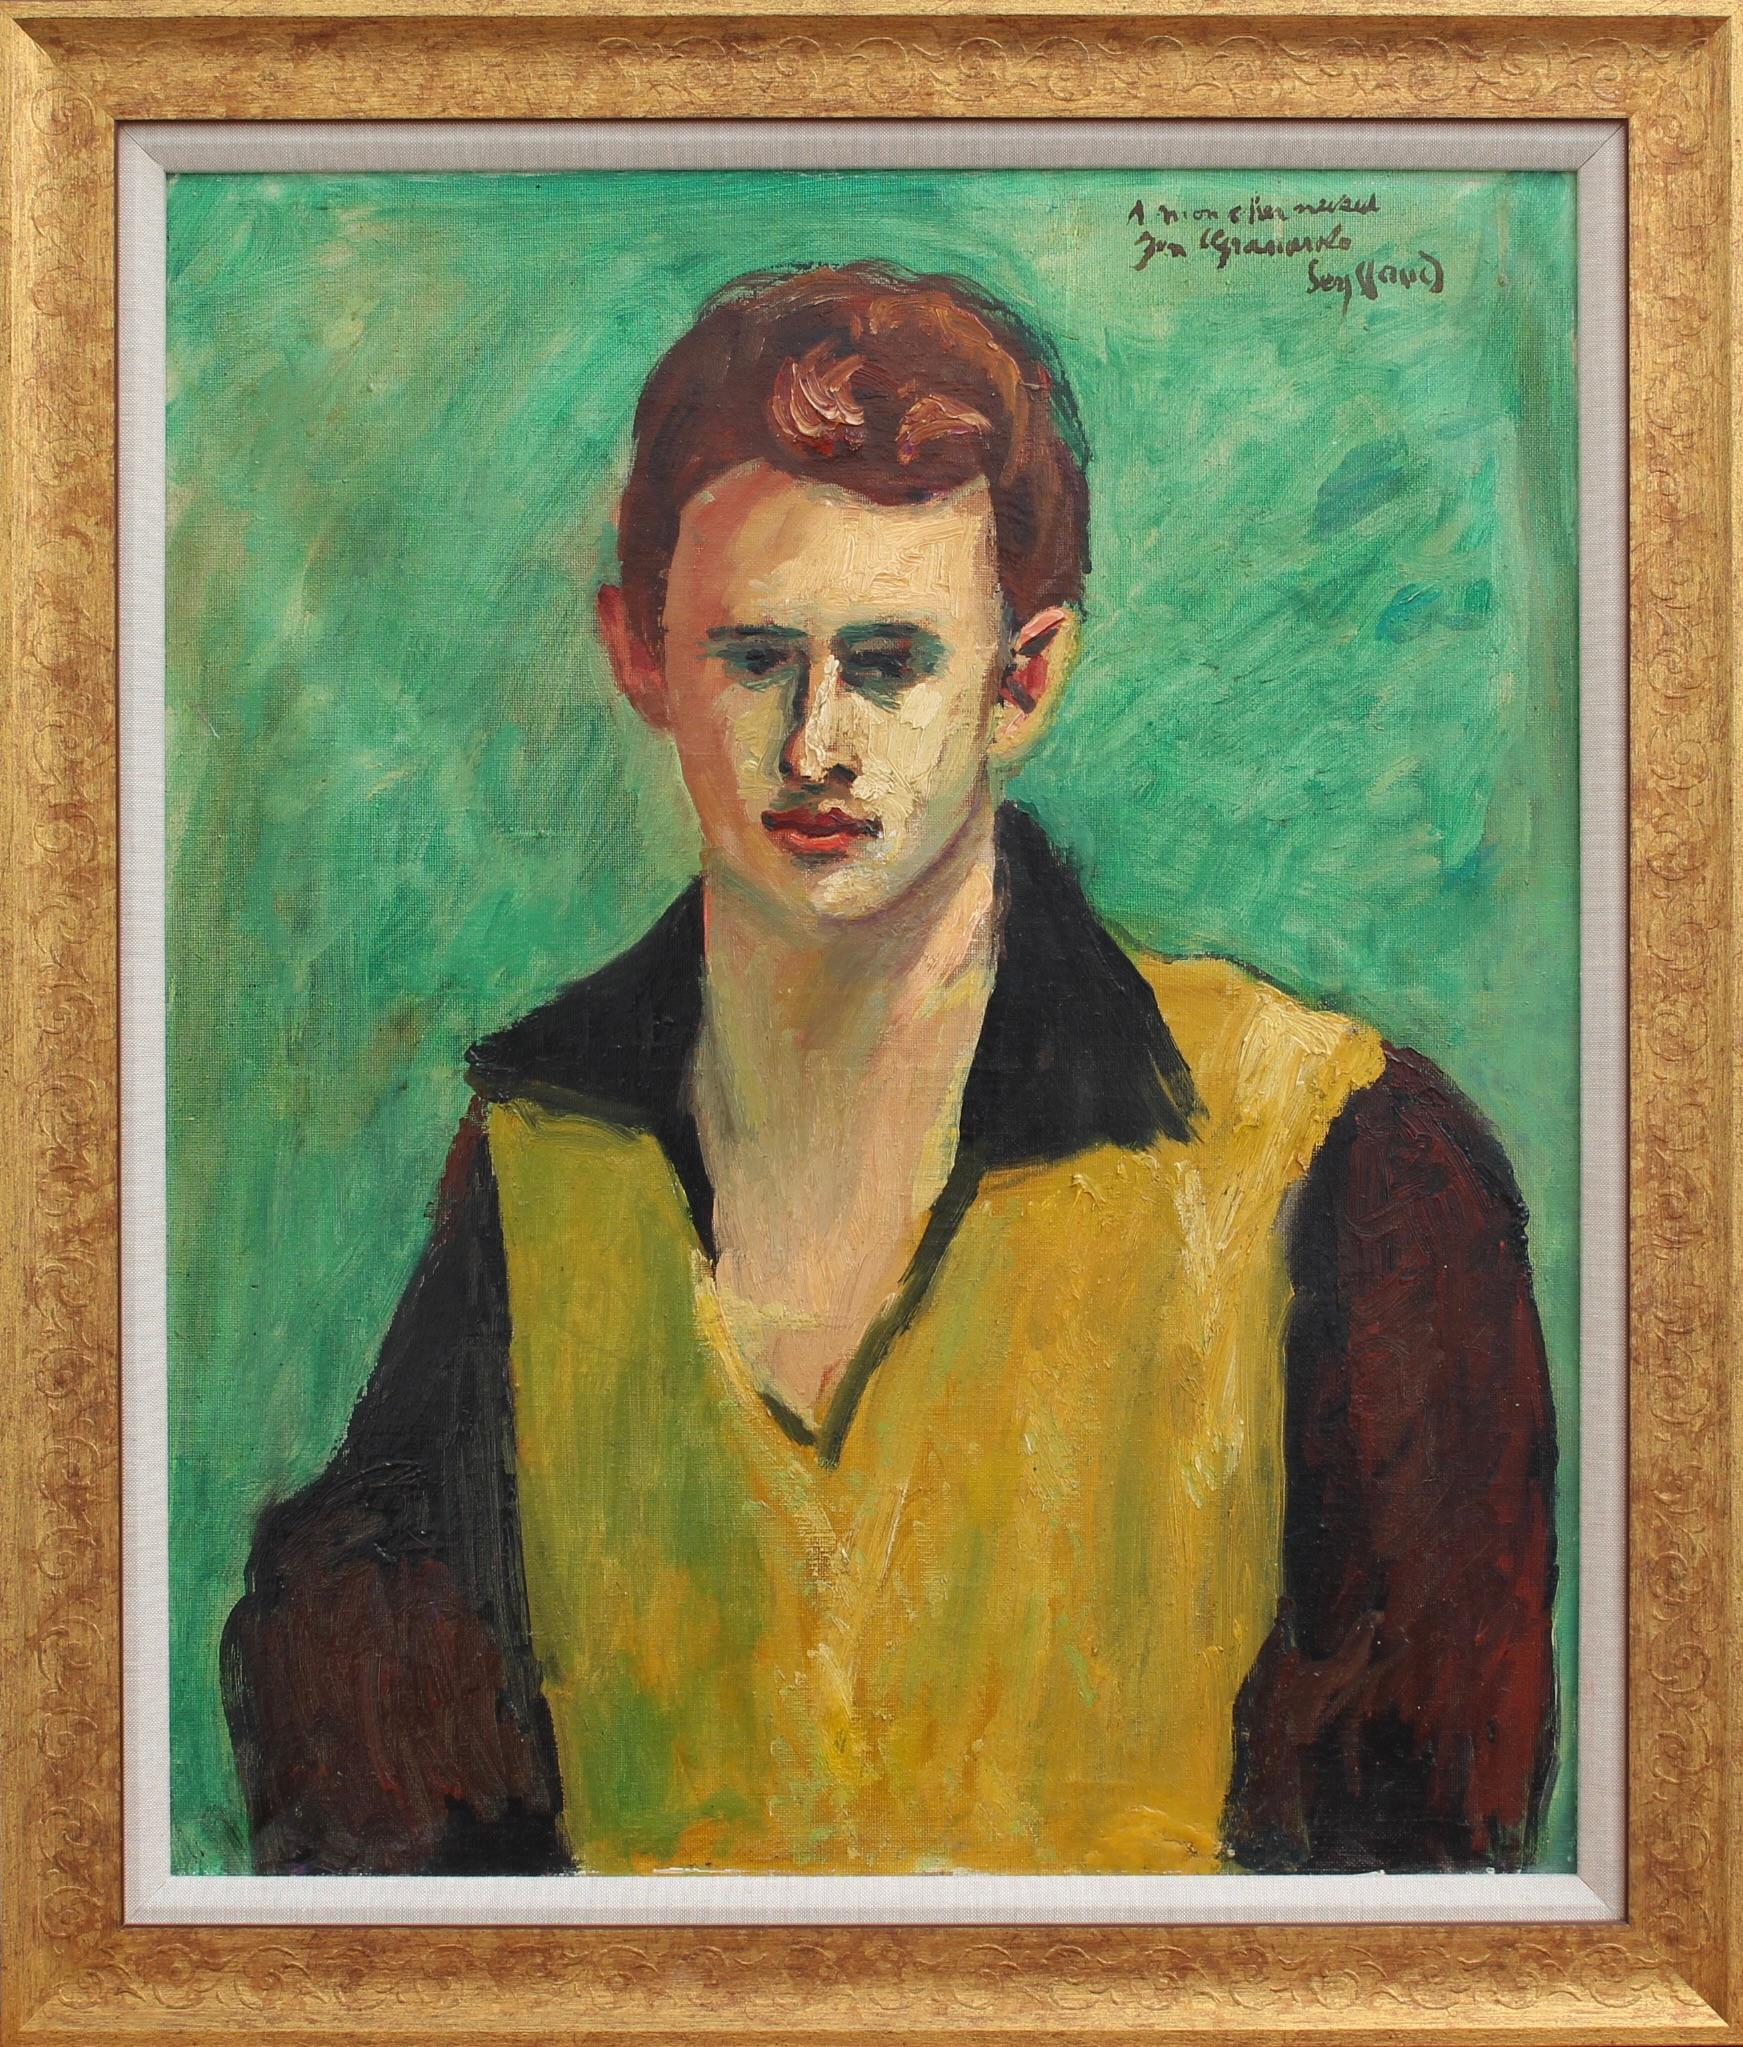 Porträt des Neffen des Künstlers", Öl auf Leinwand, von René Seyssaud (um 1930). Dieses seltene Porträt eines Familienmitglieds, seines Neffen, dem er das Werk gewidmet hat, ist bekannt für die lebendigen Farben seiner Landschaften und die